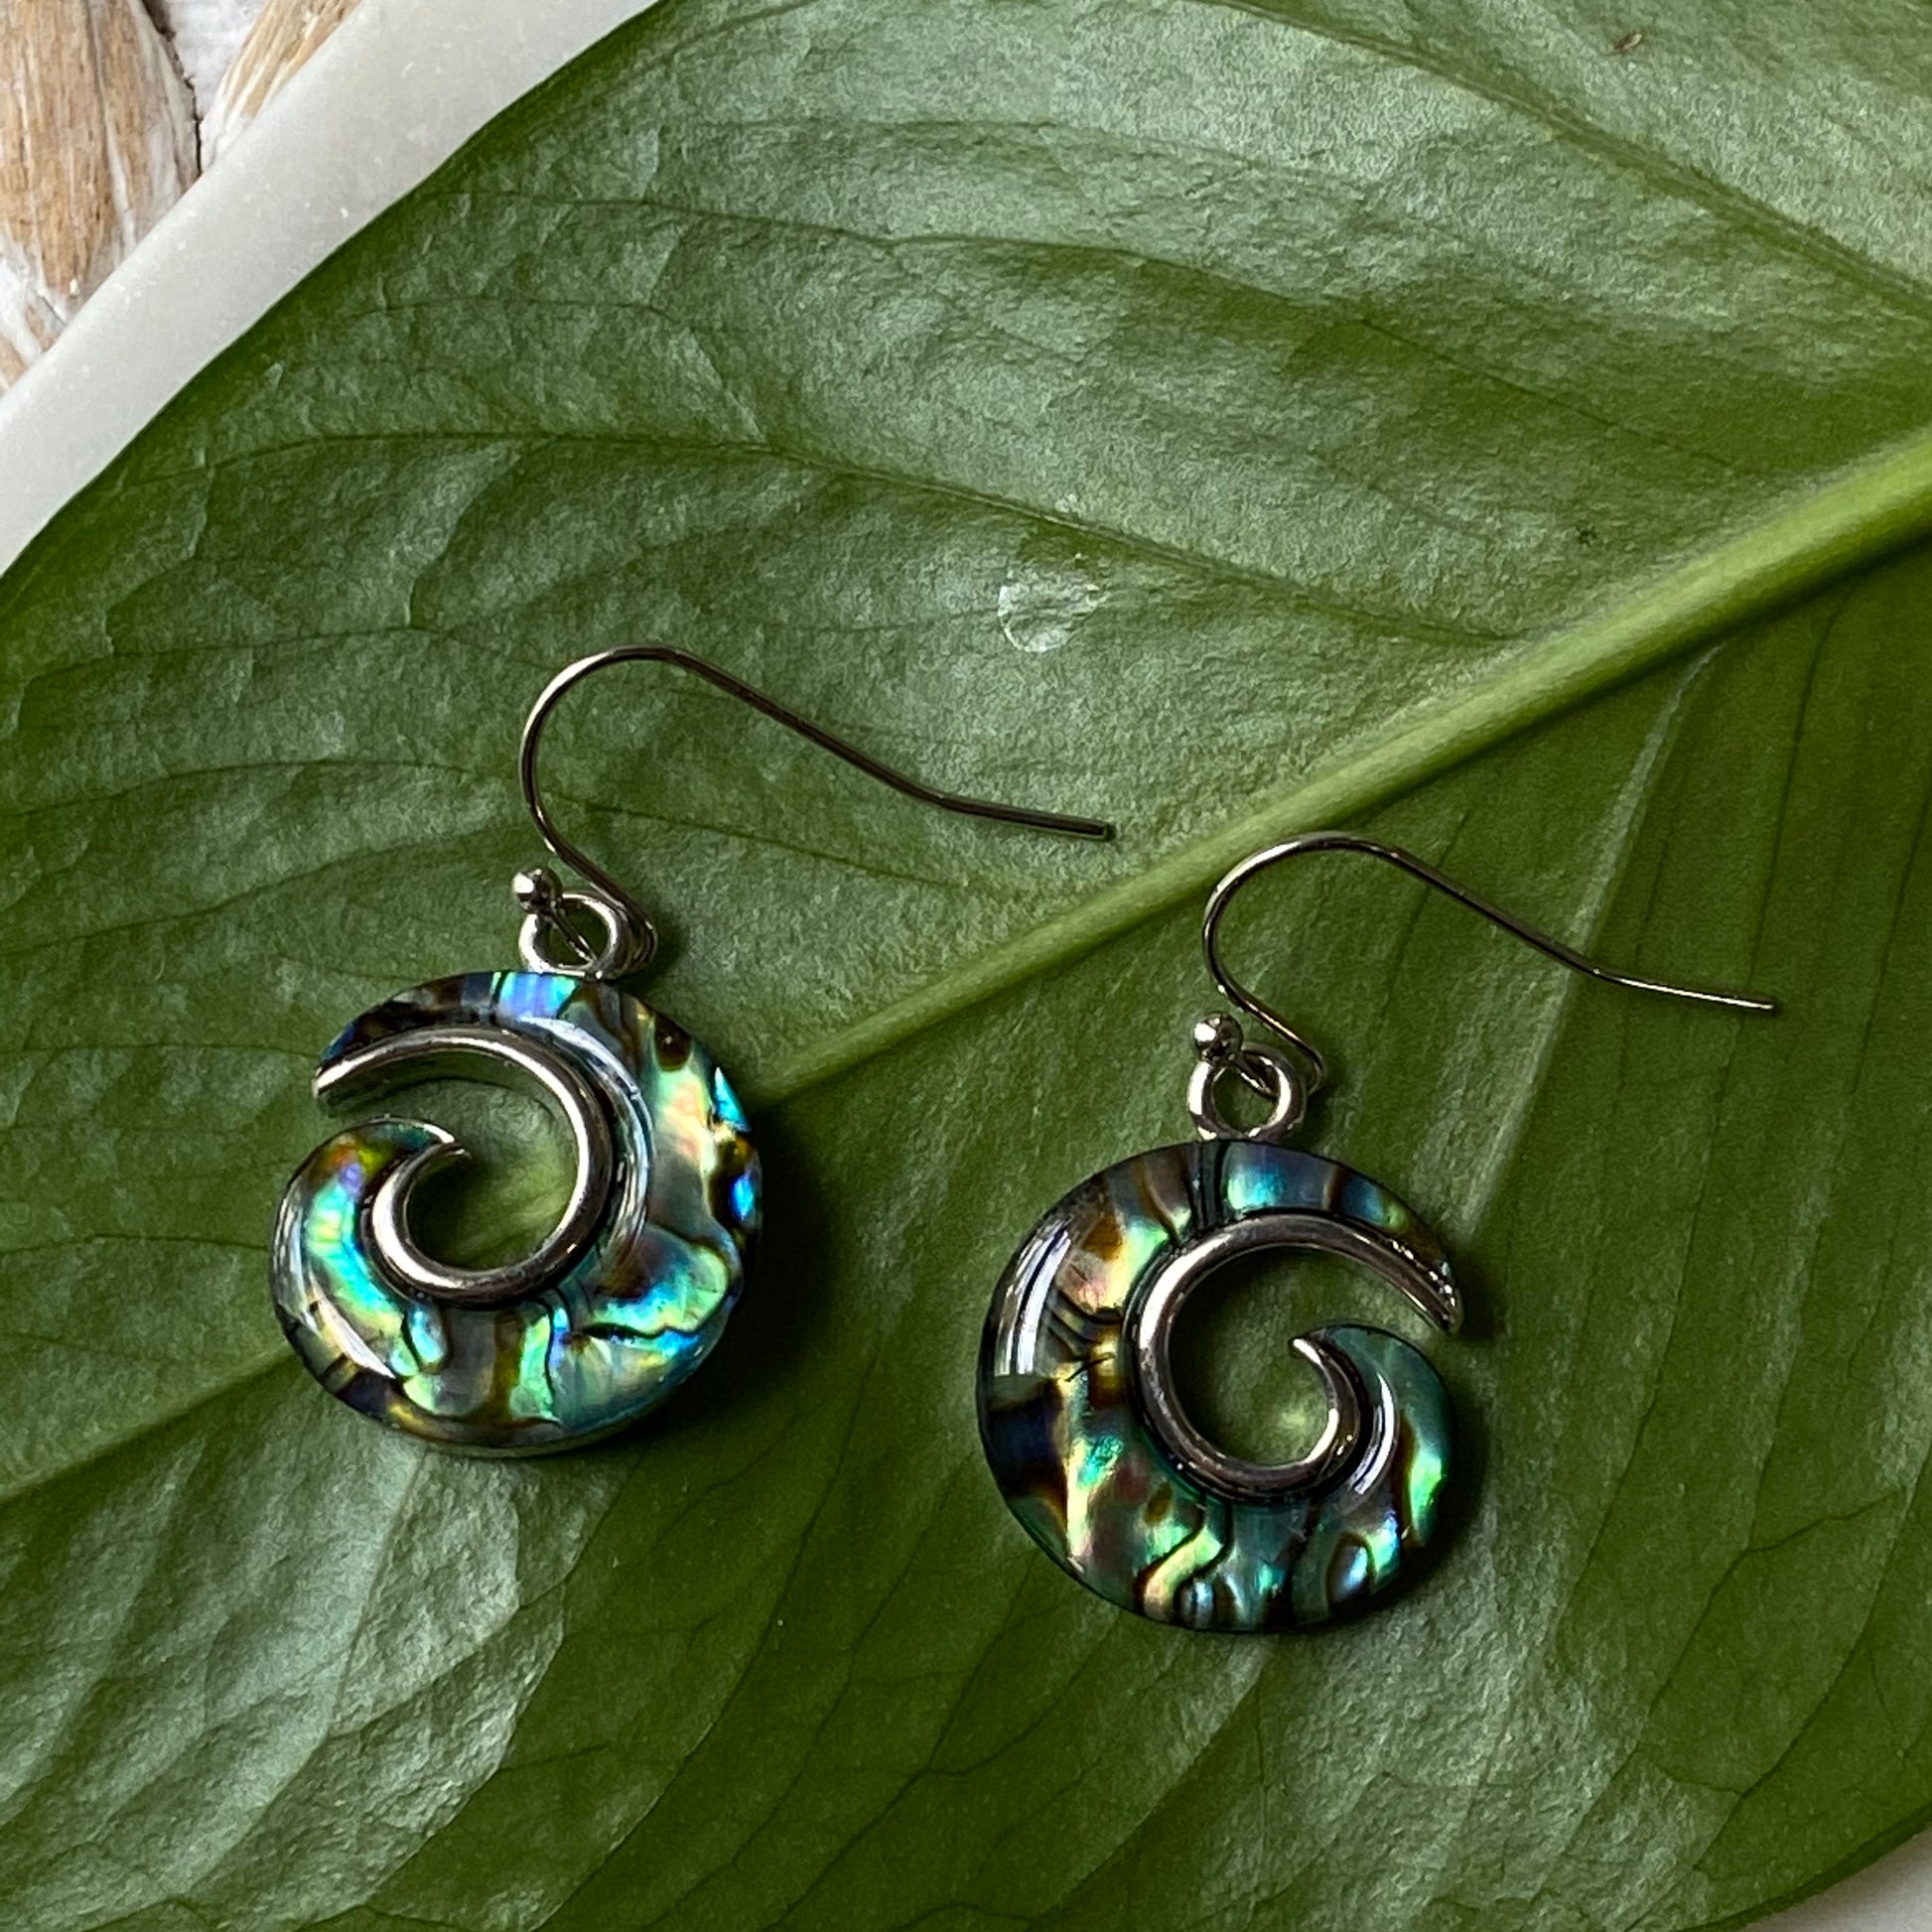 abalone shell swirl earrings on hooks